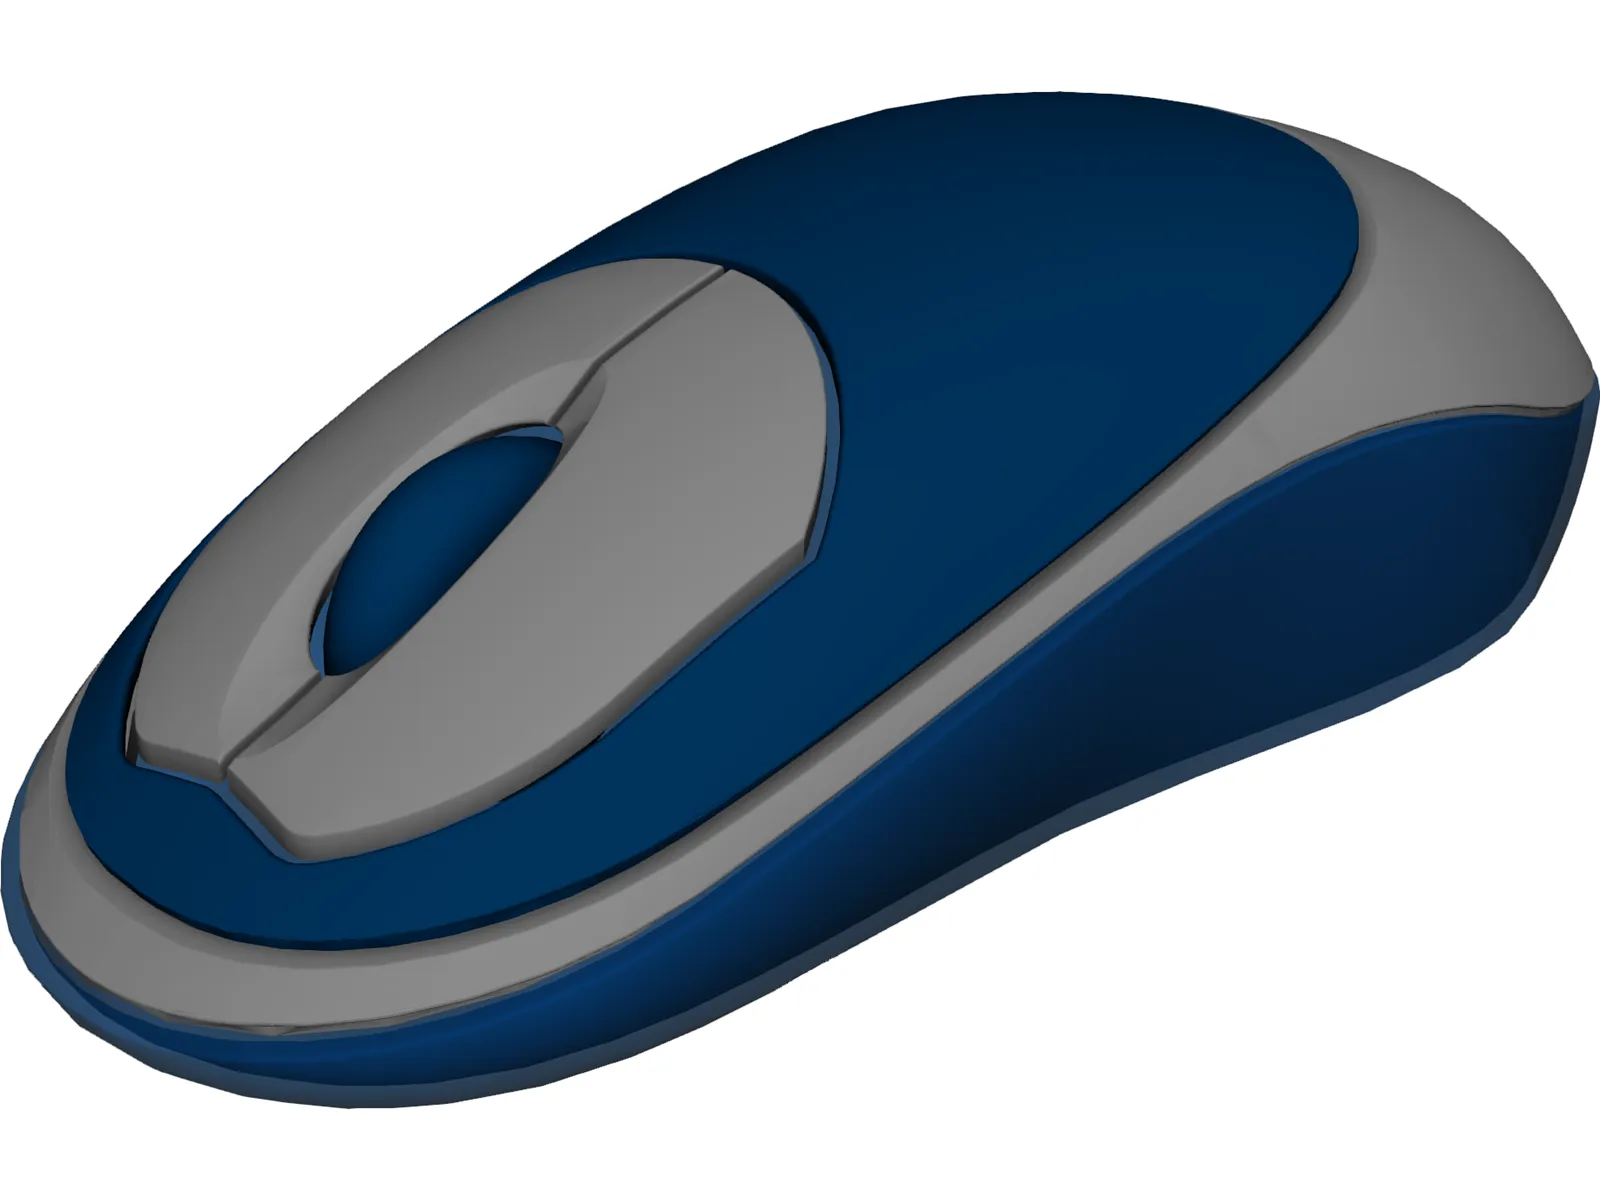 Mouse Computer Cordless 3D Model